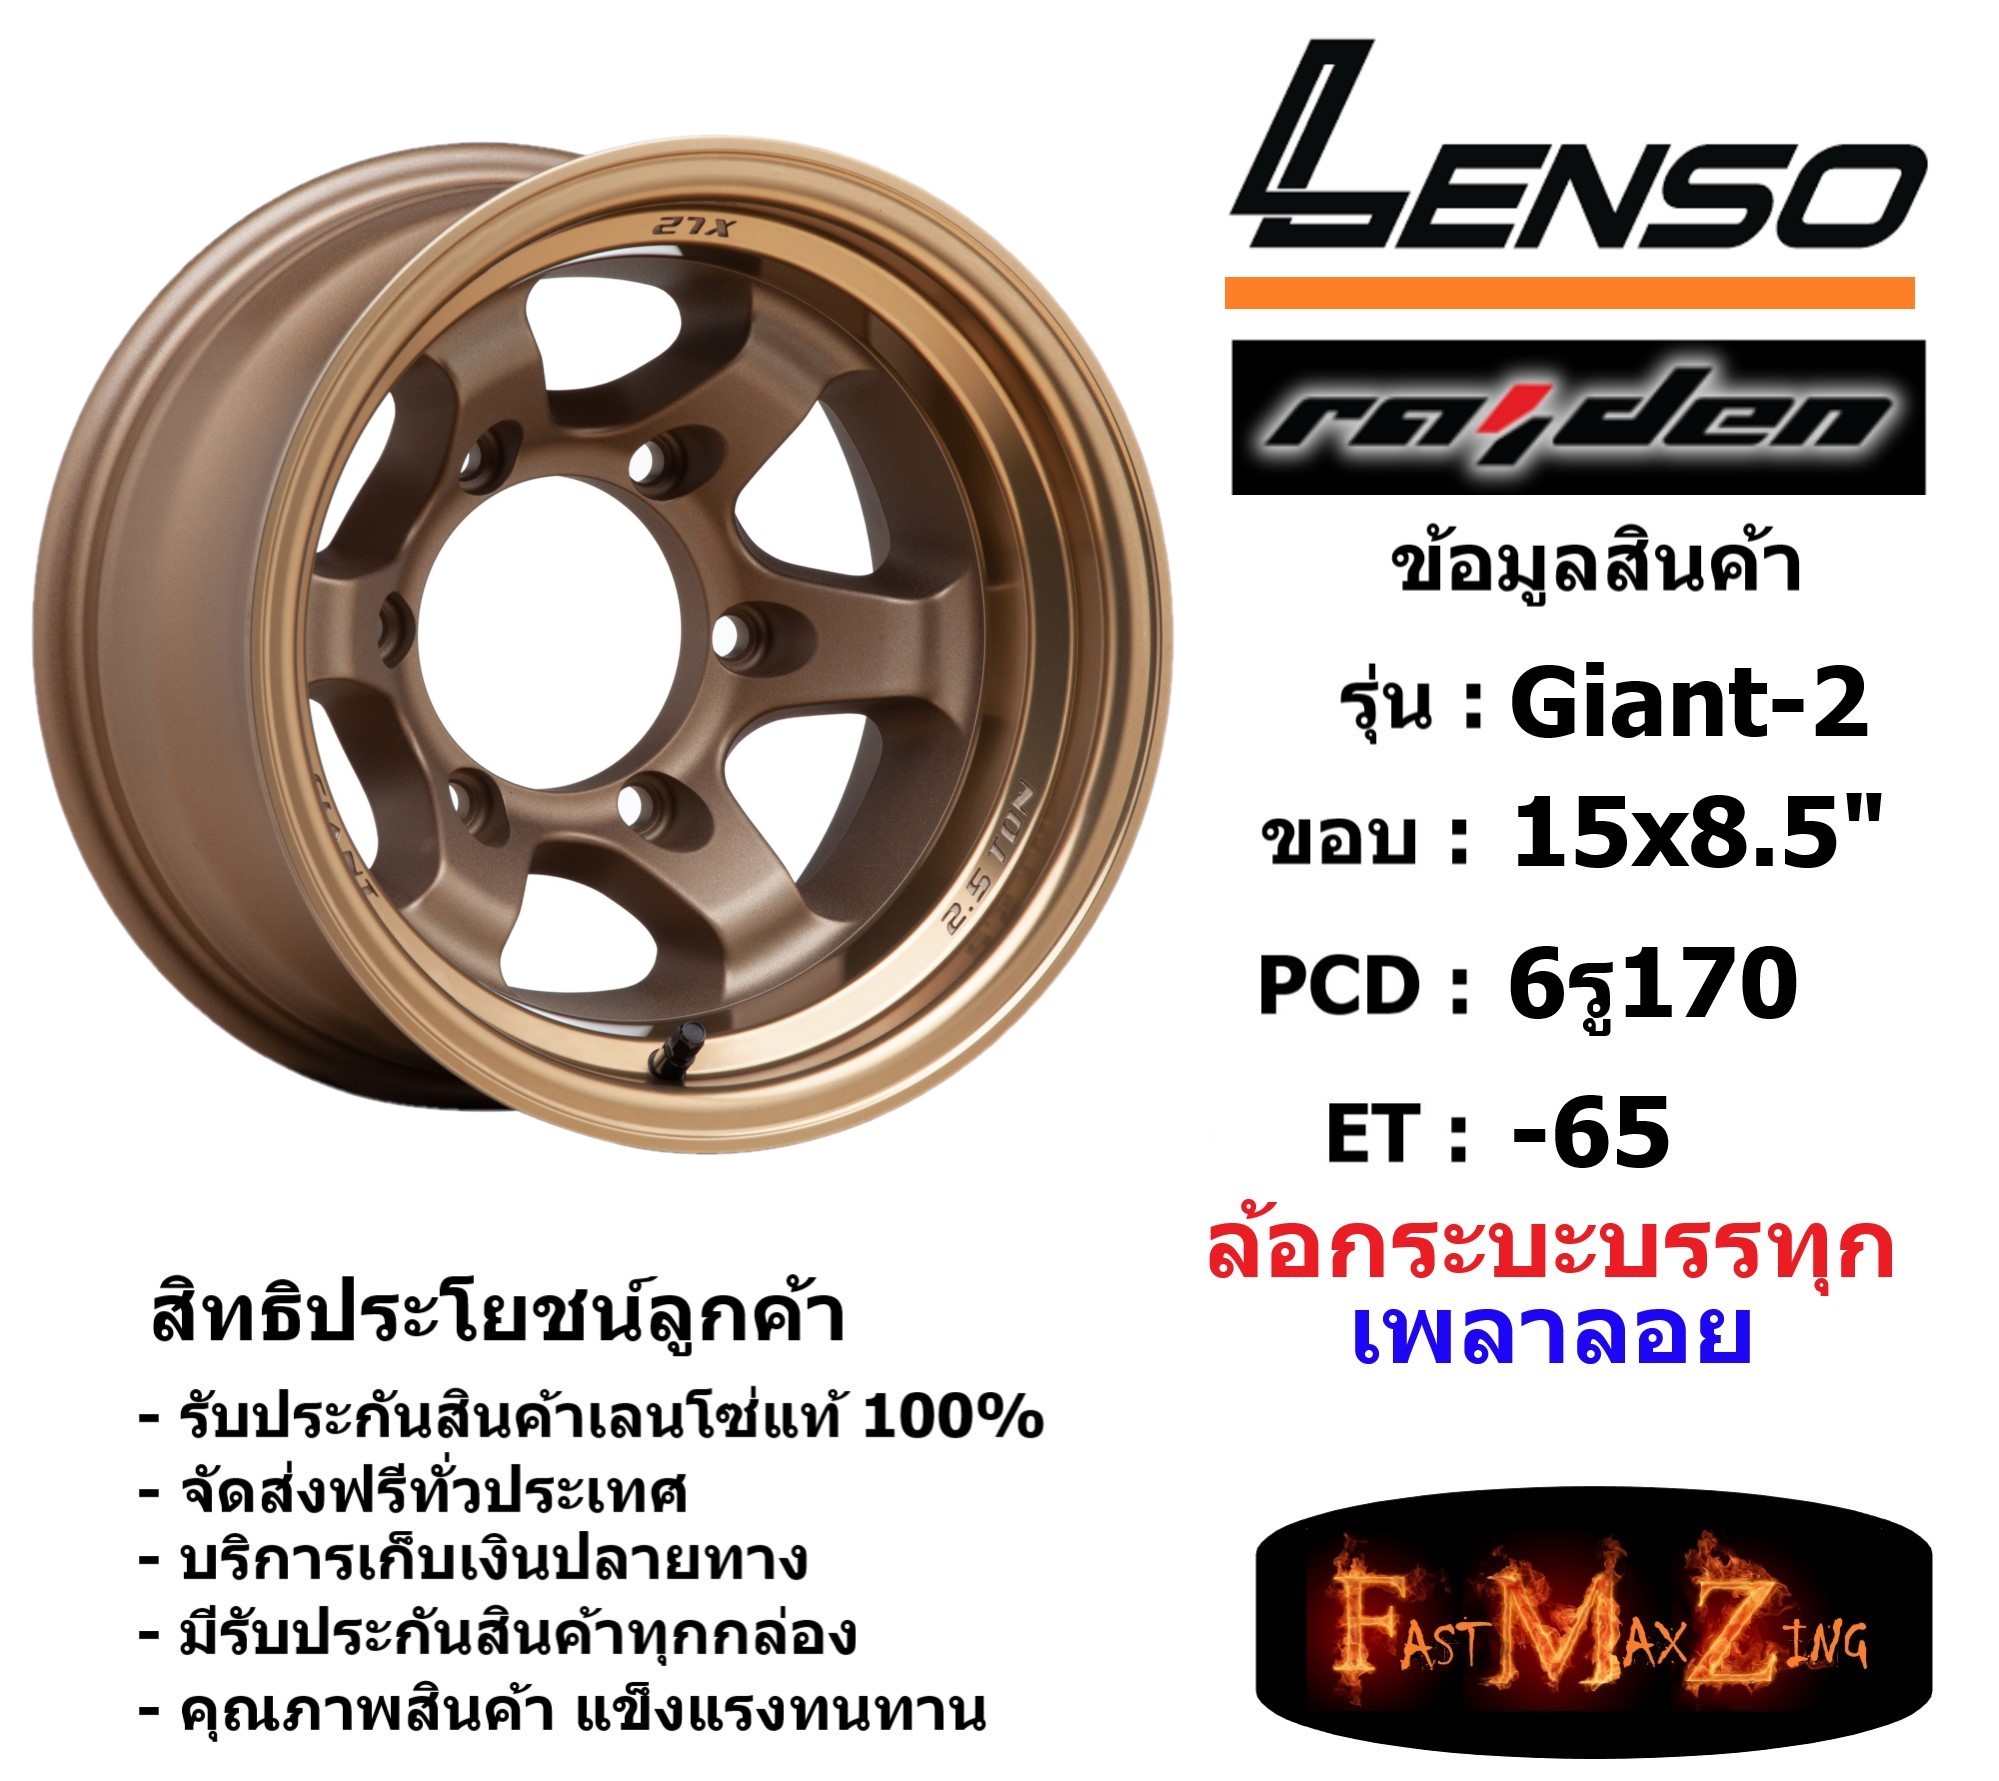 แม็กบรรทุก เพลาลอย Lenso Wheel GIANT-2 ขอบ 15x8.5